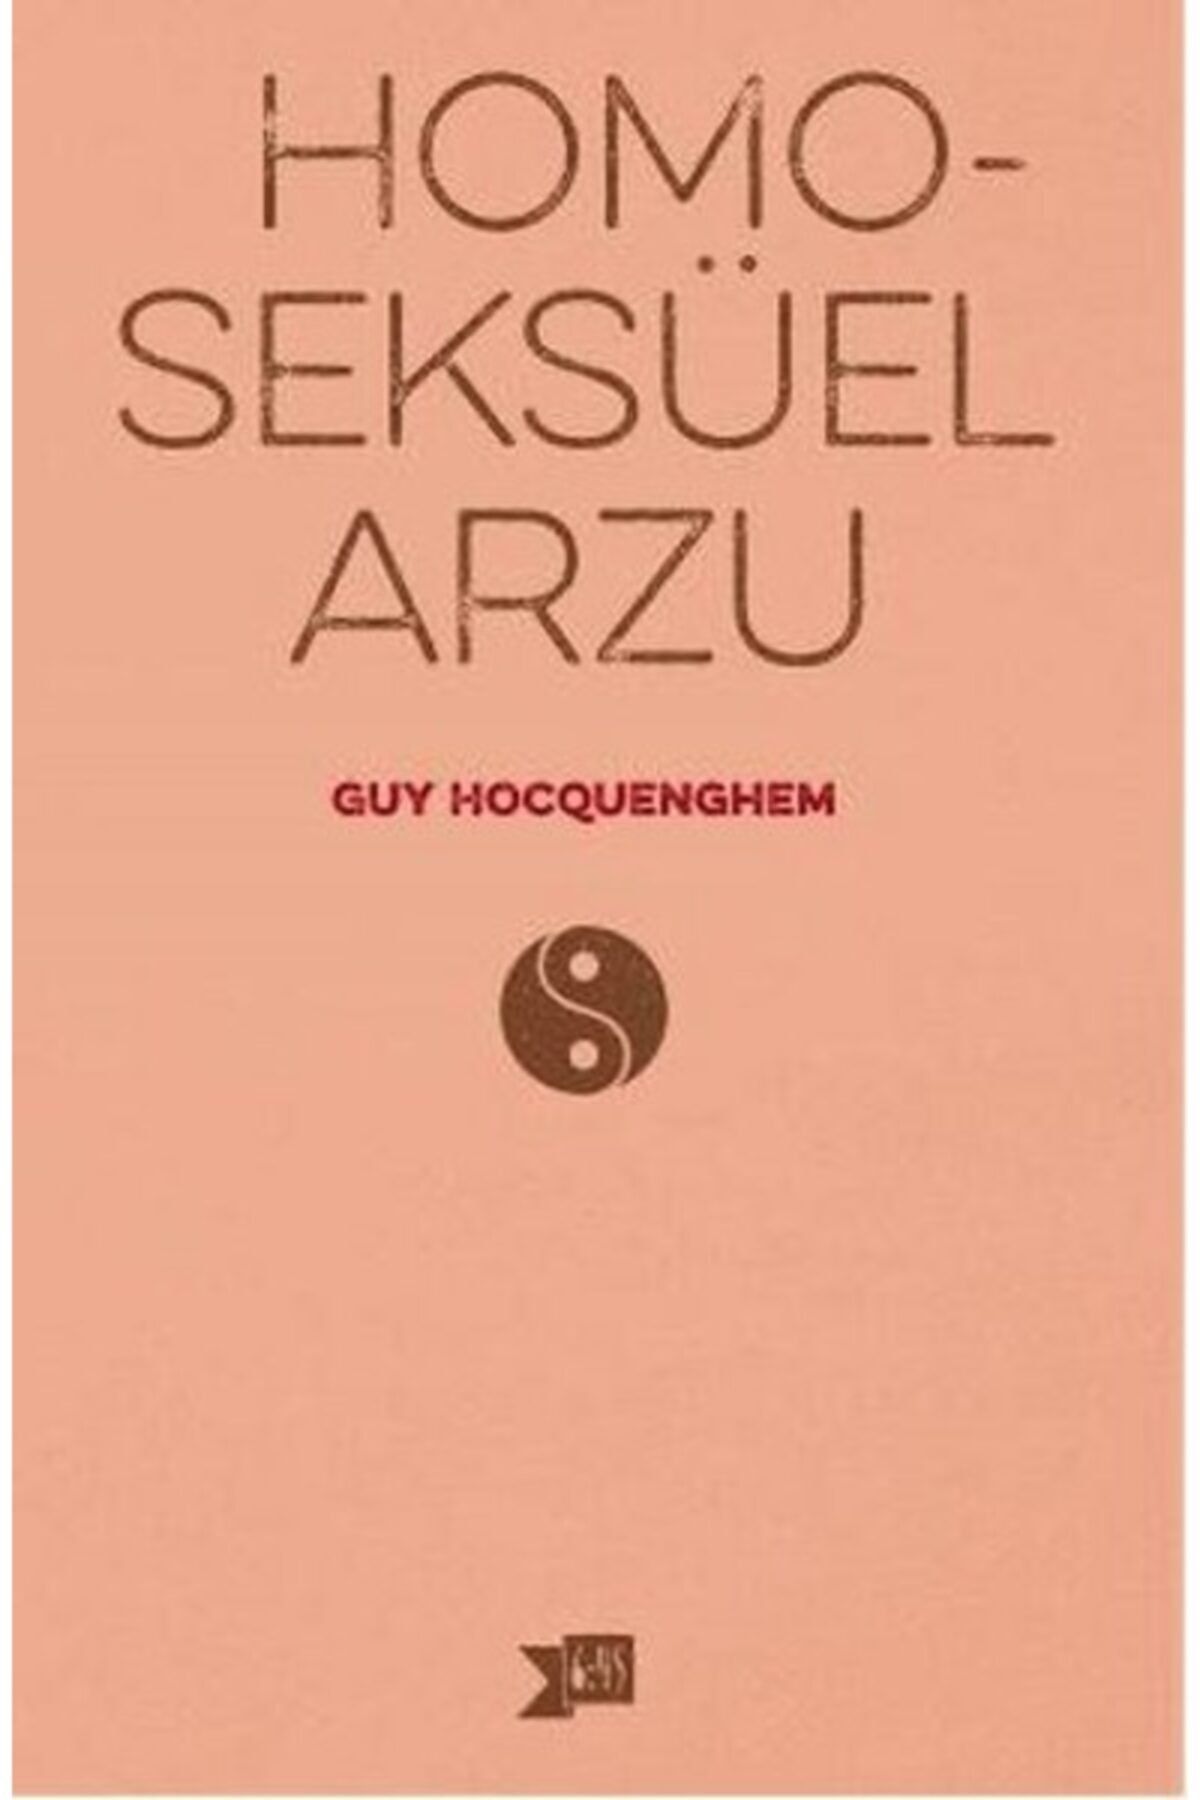 Altıkırkbeş Yayınları Homoseksüel Arzu Guy Hocquenghem